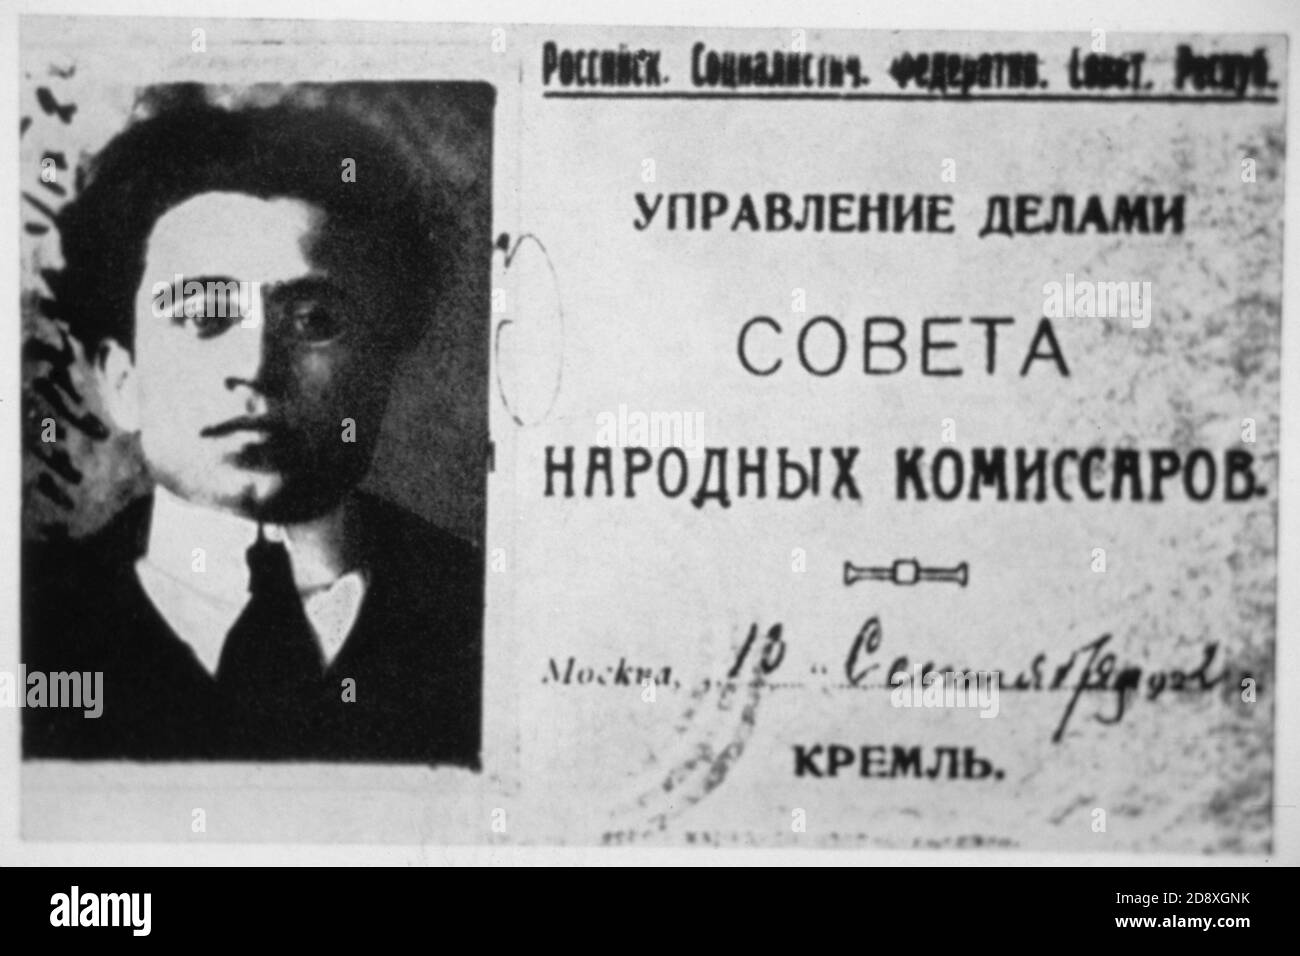 1923 , RUSSIA : ANTONIO GRAMSCI ( 1891 - 1937 ) , intellettuale , scrittore e comunista italiano , carta del Partito comunista sovietico ( URSS ) 1923 - PARTITO COMUNISTA ITALIANO - PCI - POLITICO - POLITICO - POLITICA - POLITICA - tessera - tesserino ---- Archivio GBB Foto Stock